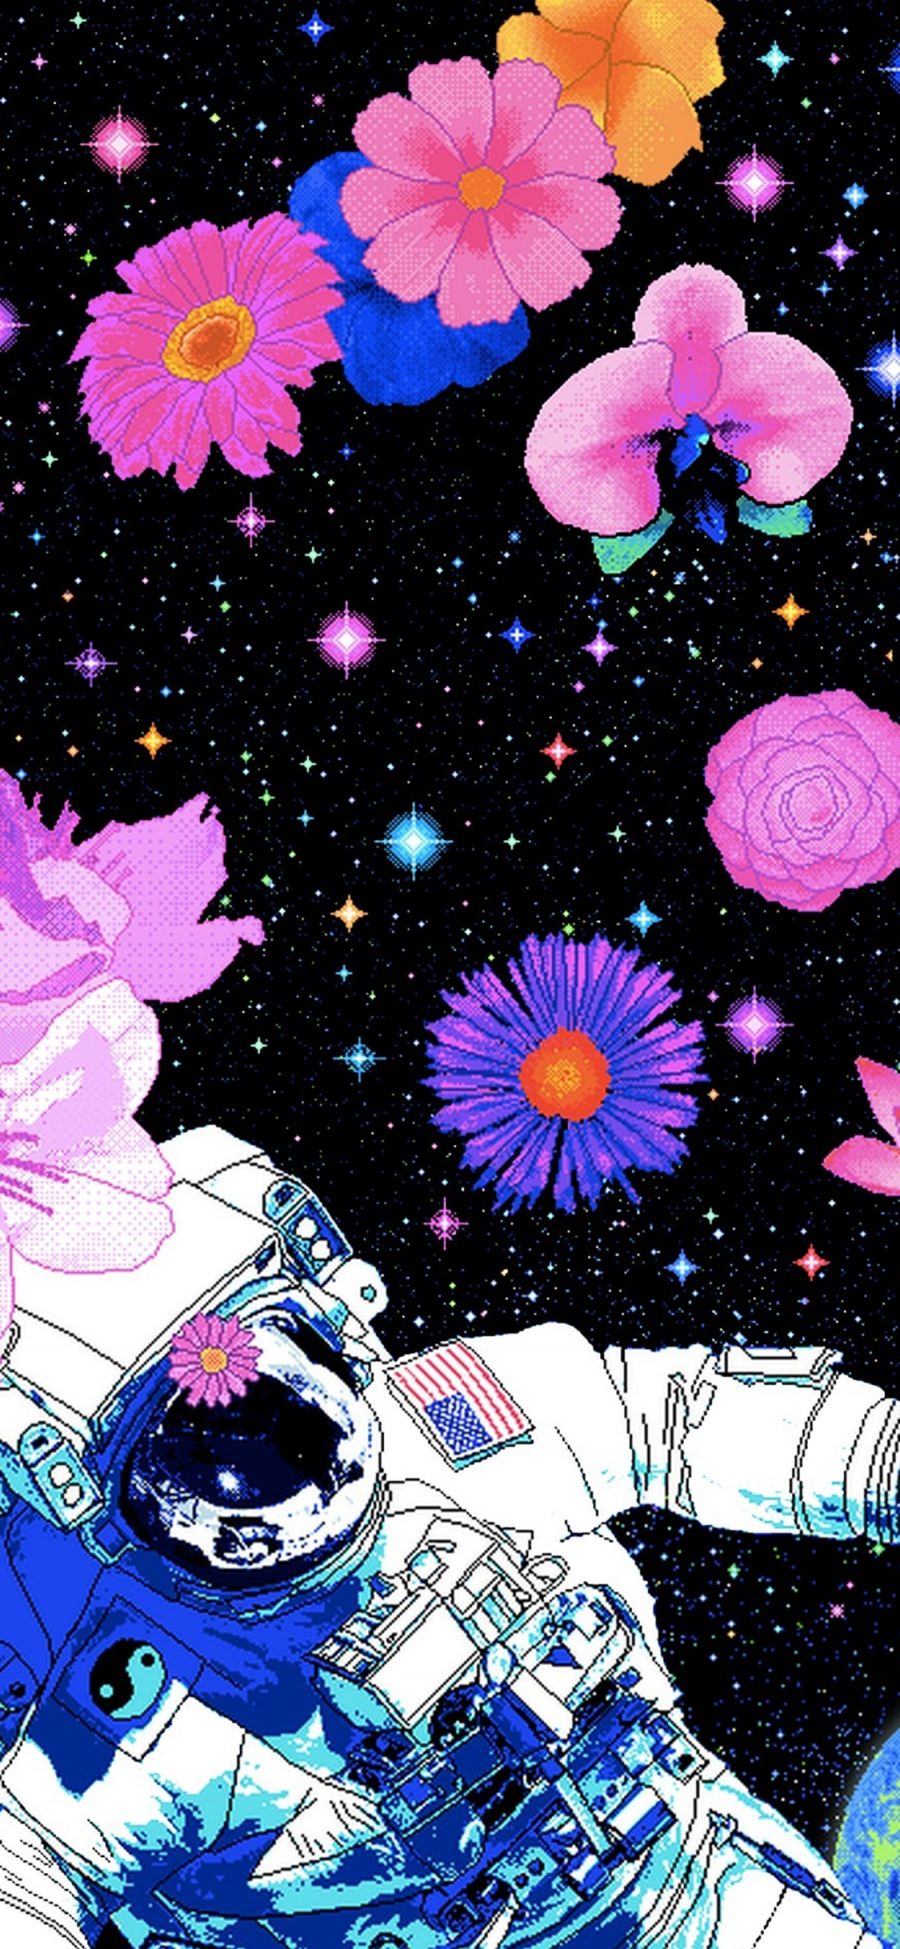 [2436×1125]宇航员 像素 插图 花朵 星空 苹果手机动漫壁纸图片